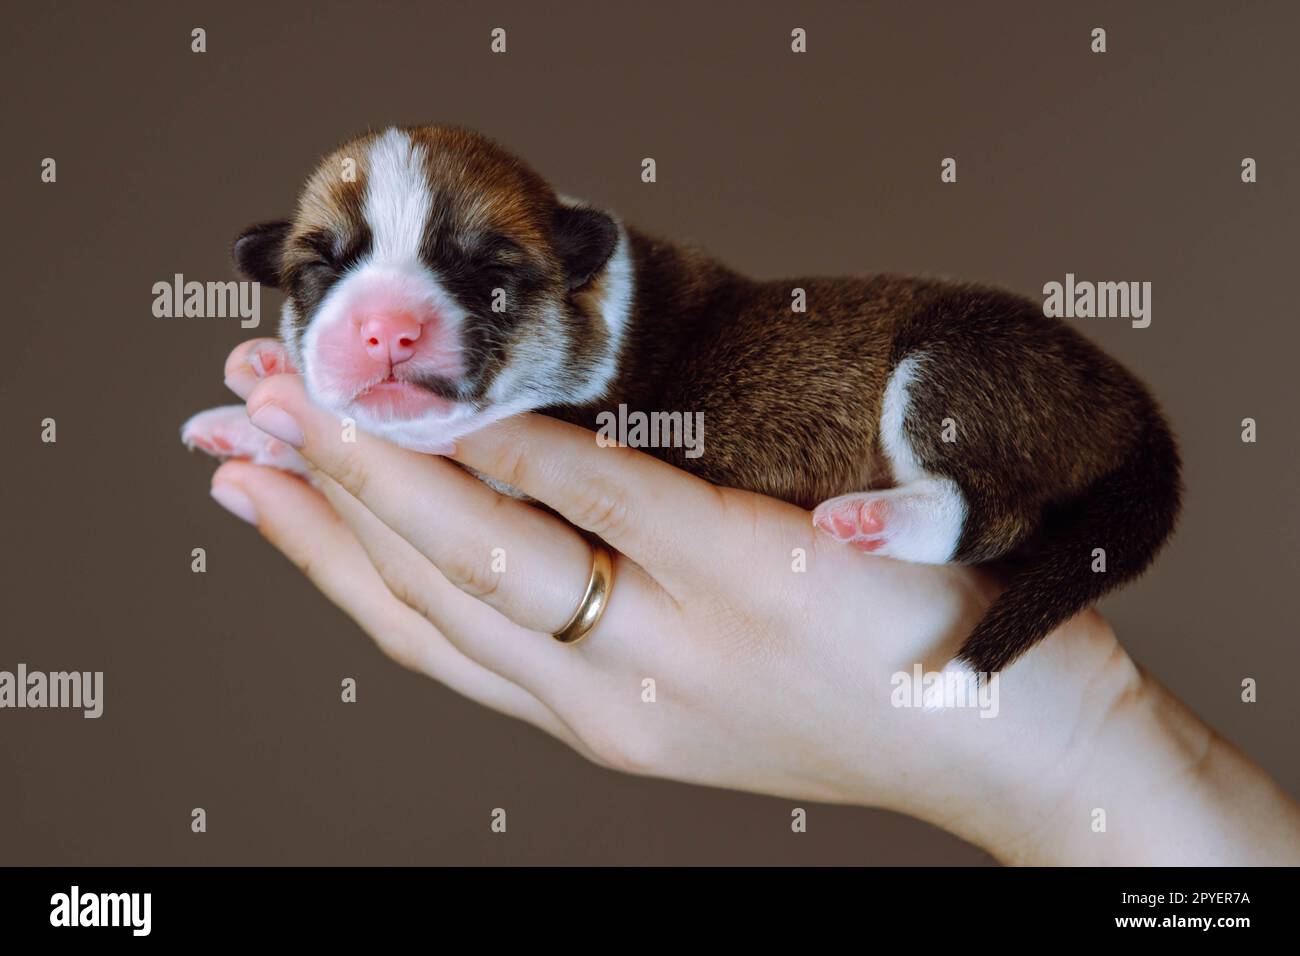 Gros plan main humaine méconnaissable avec anneau portant soigneusement, montrant petit chiot de chien corgi gallois. Élevage de chiens. Banque D'Images